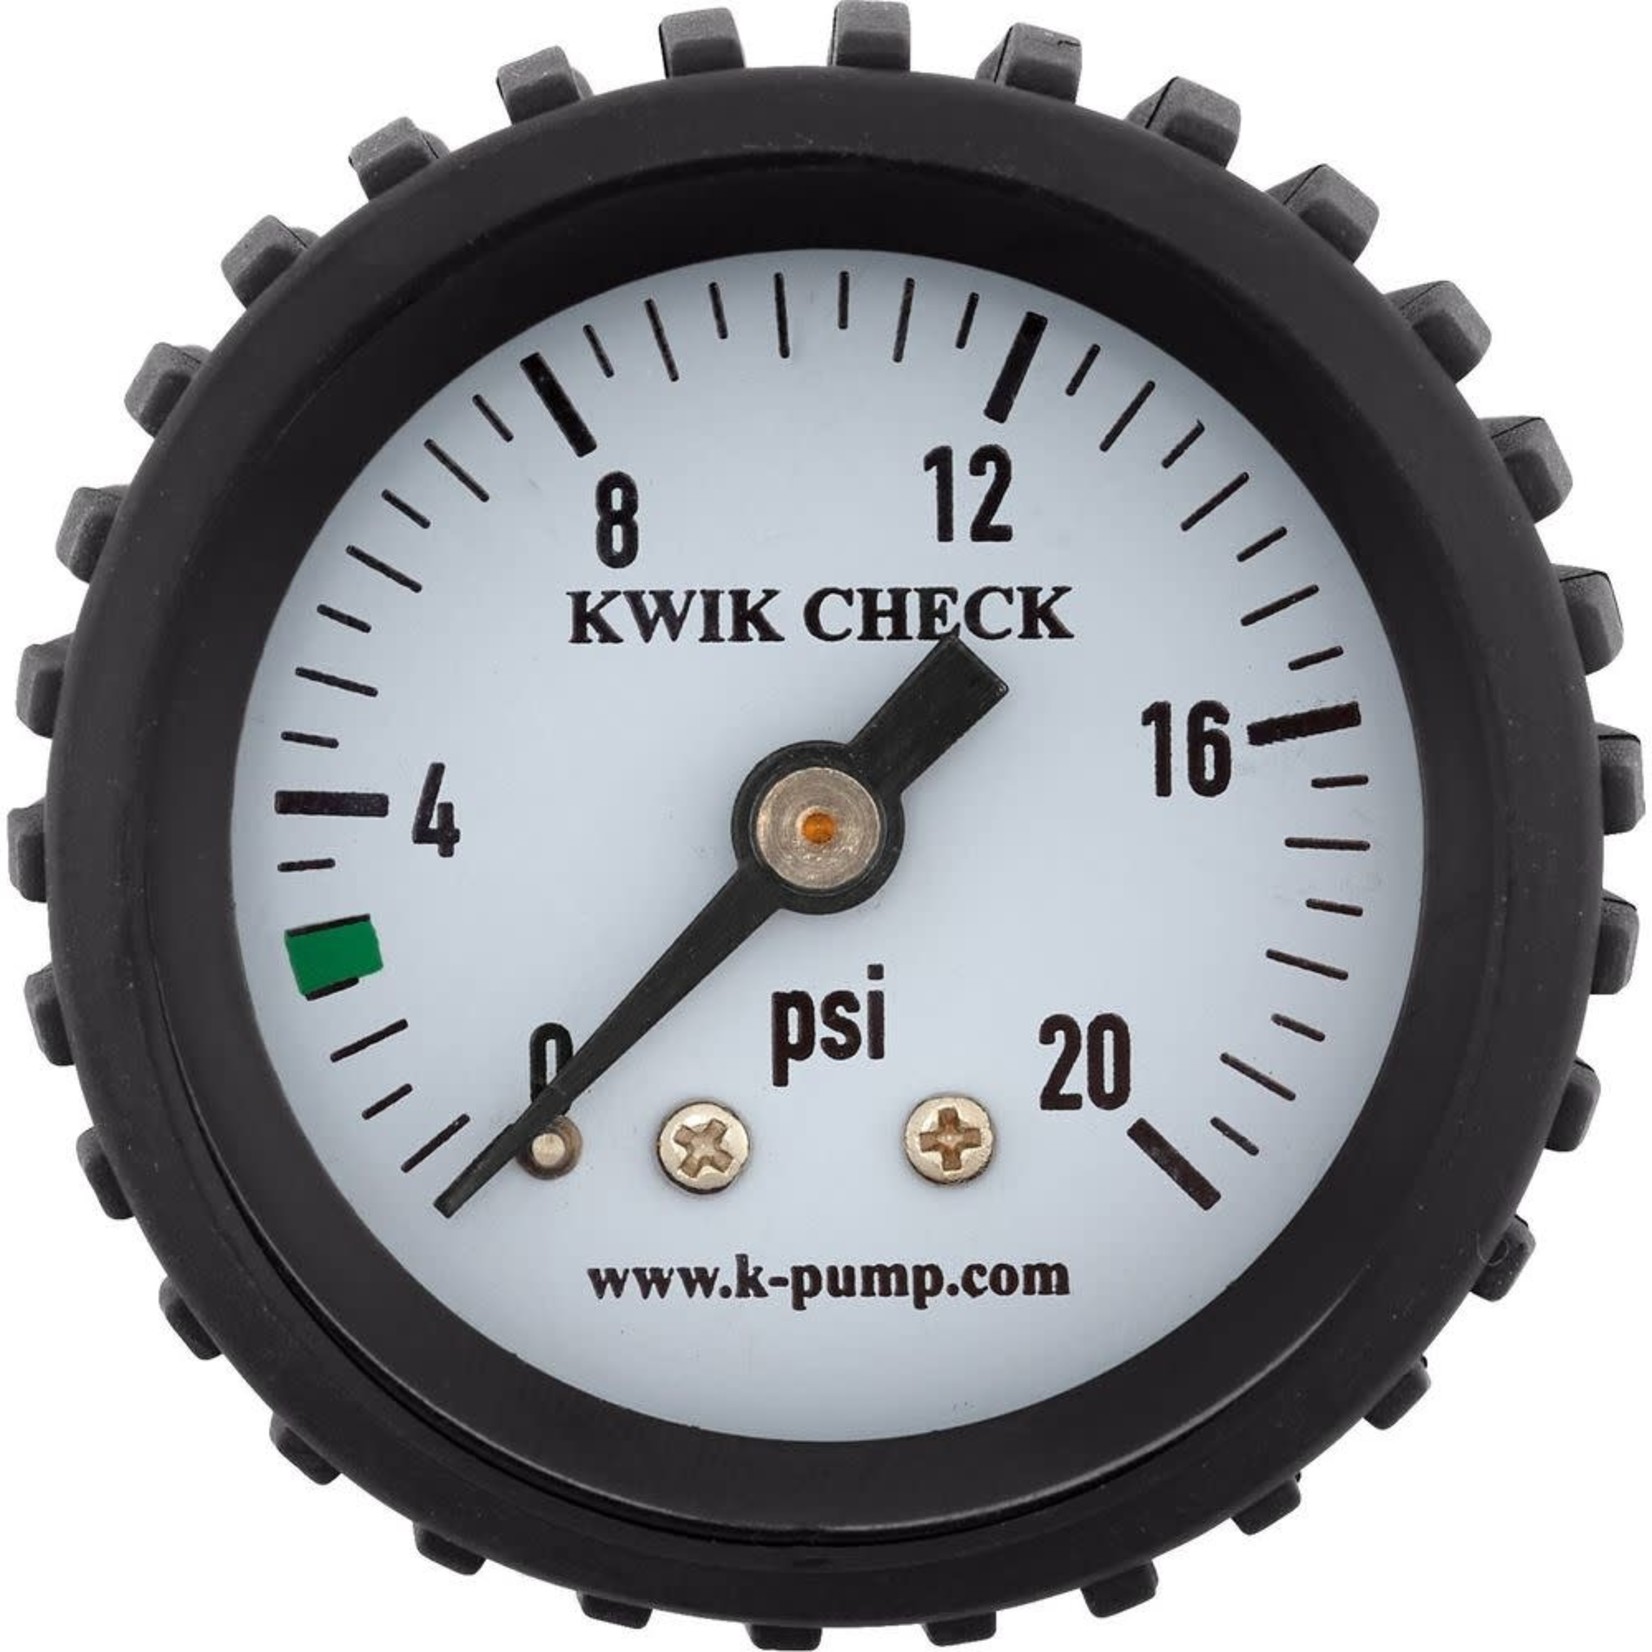 Kpump K-Pump Kwik Check Standard Pressure Gauge